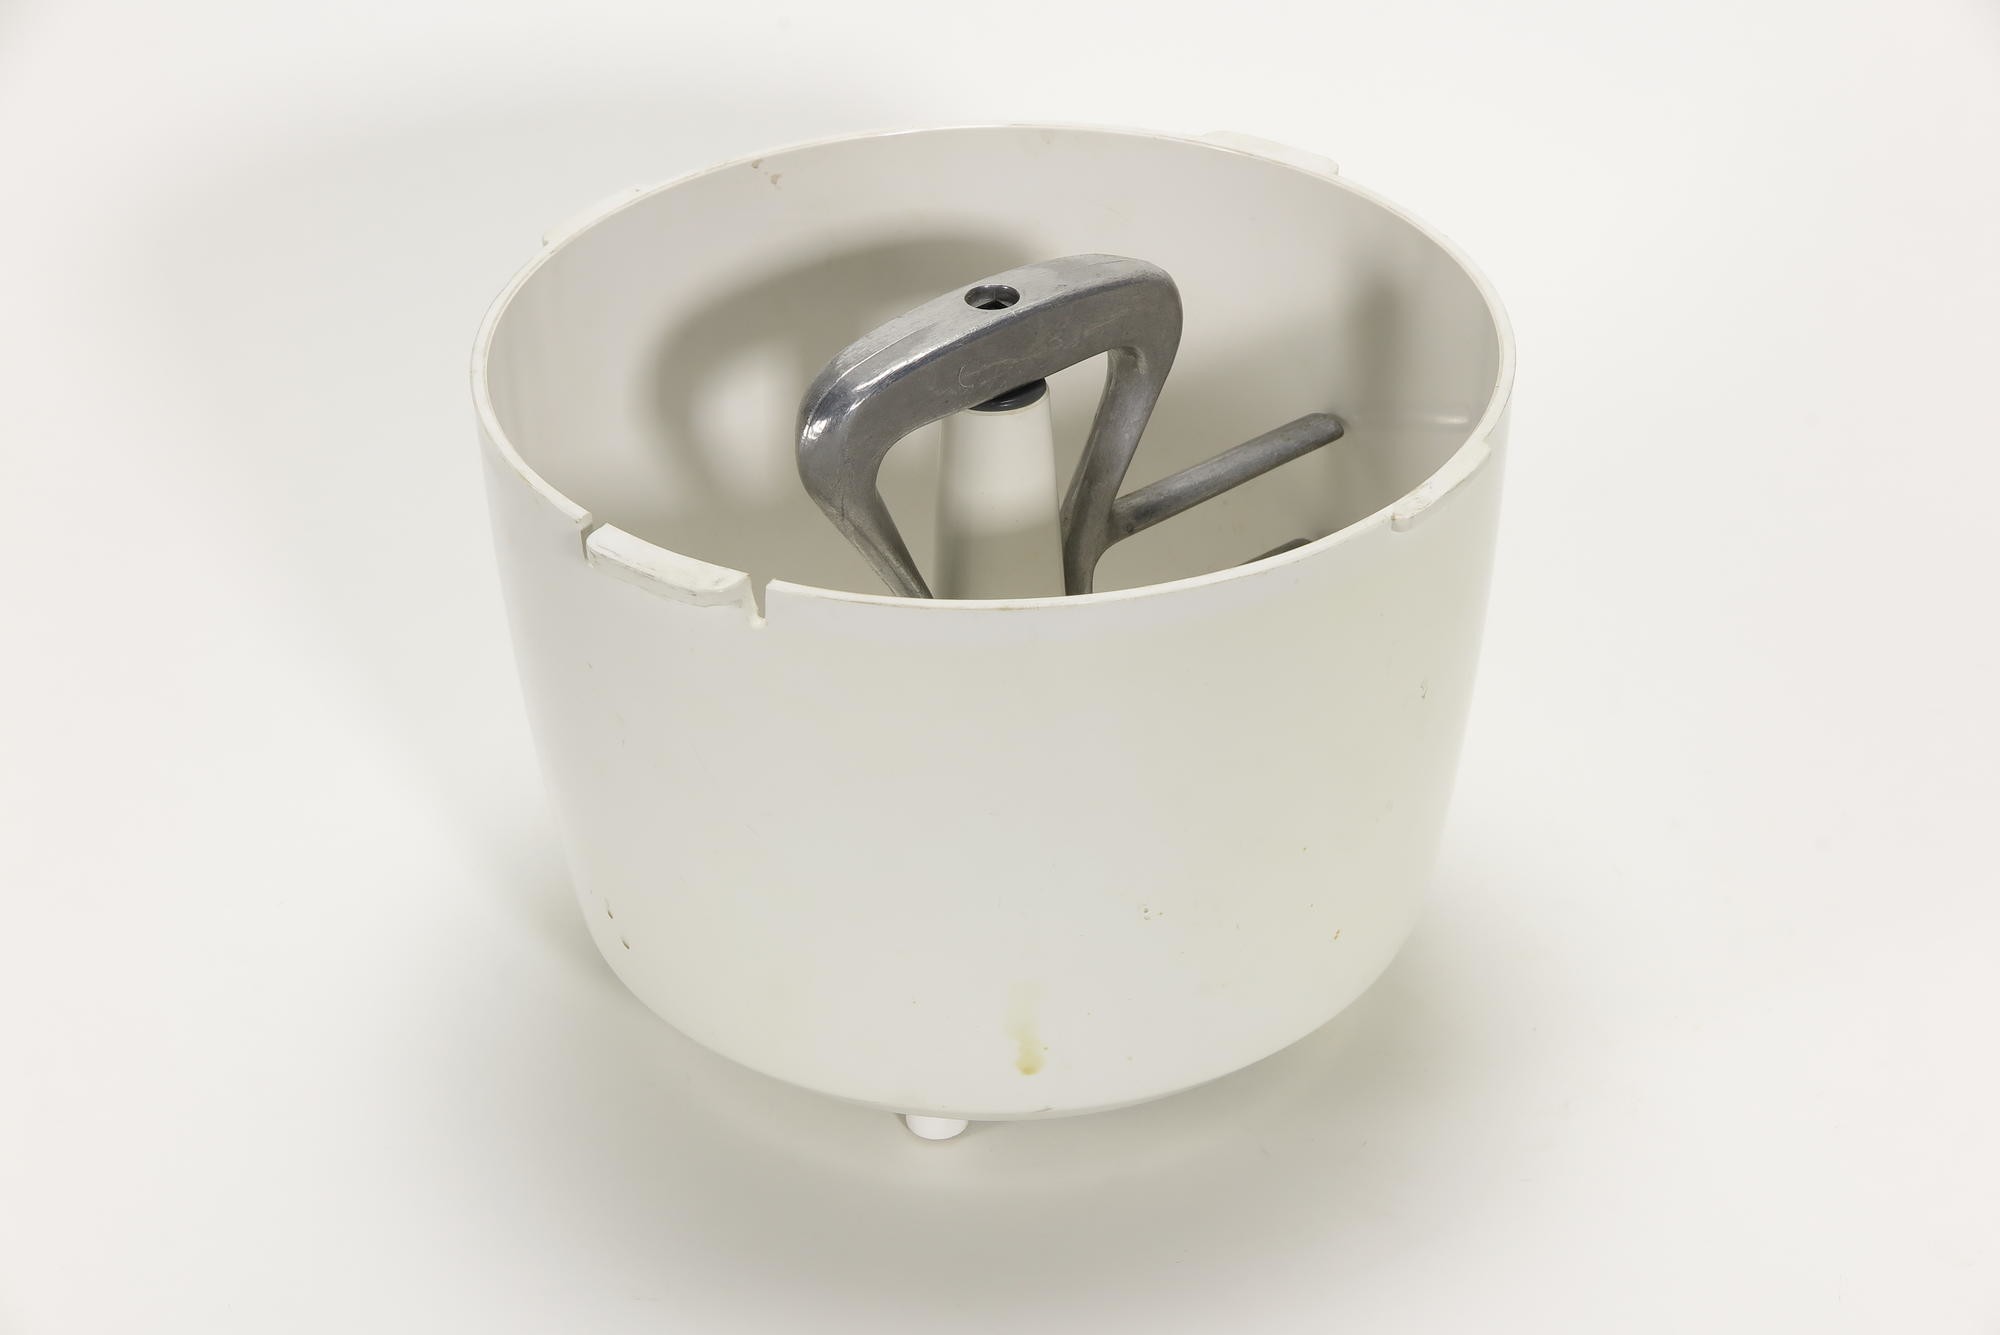 Rührschüssel mit Knetarm, Zubehör zu Elektrischer Küchenmaschine AEG Typ MUE 4 (Stiftung Deutsches Technikmuseum Berlin CC0)